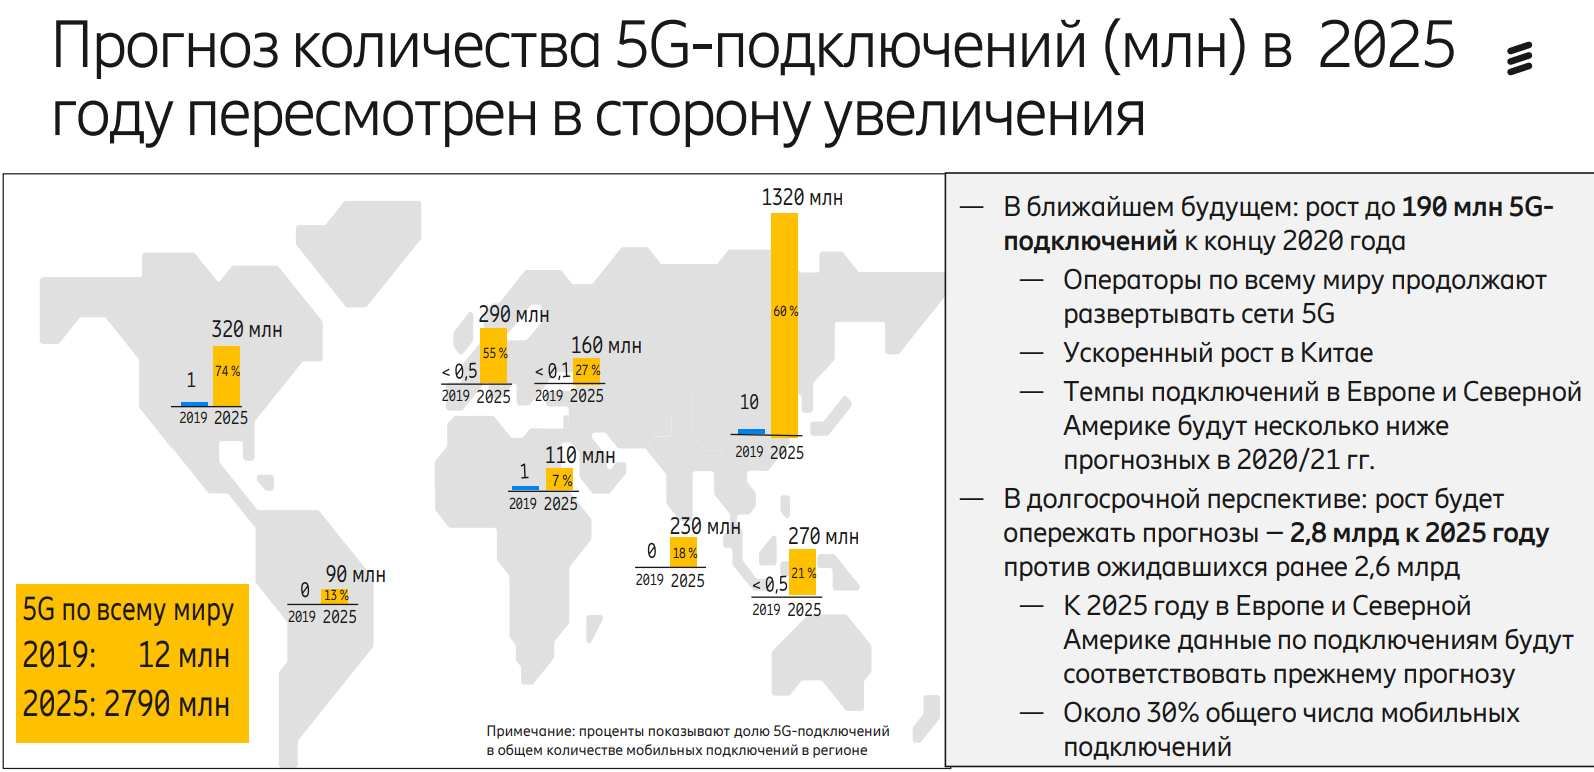 Какая индексация будет в 2025 году. 5g в мире. Развертывание 5 g в мире. Зона покрытия 5g в мире. Перспективы развития 5 g в России.